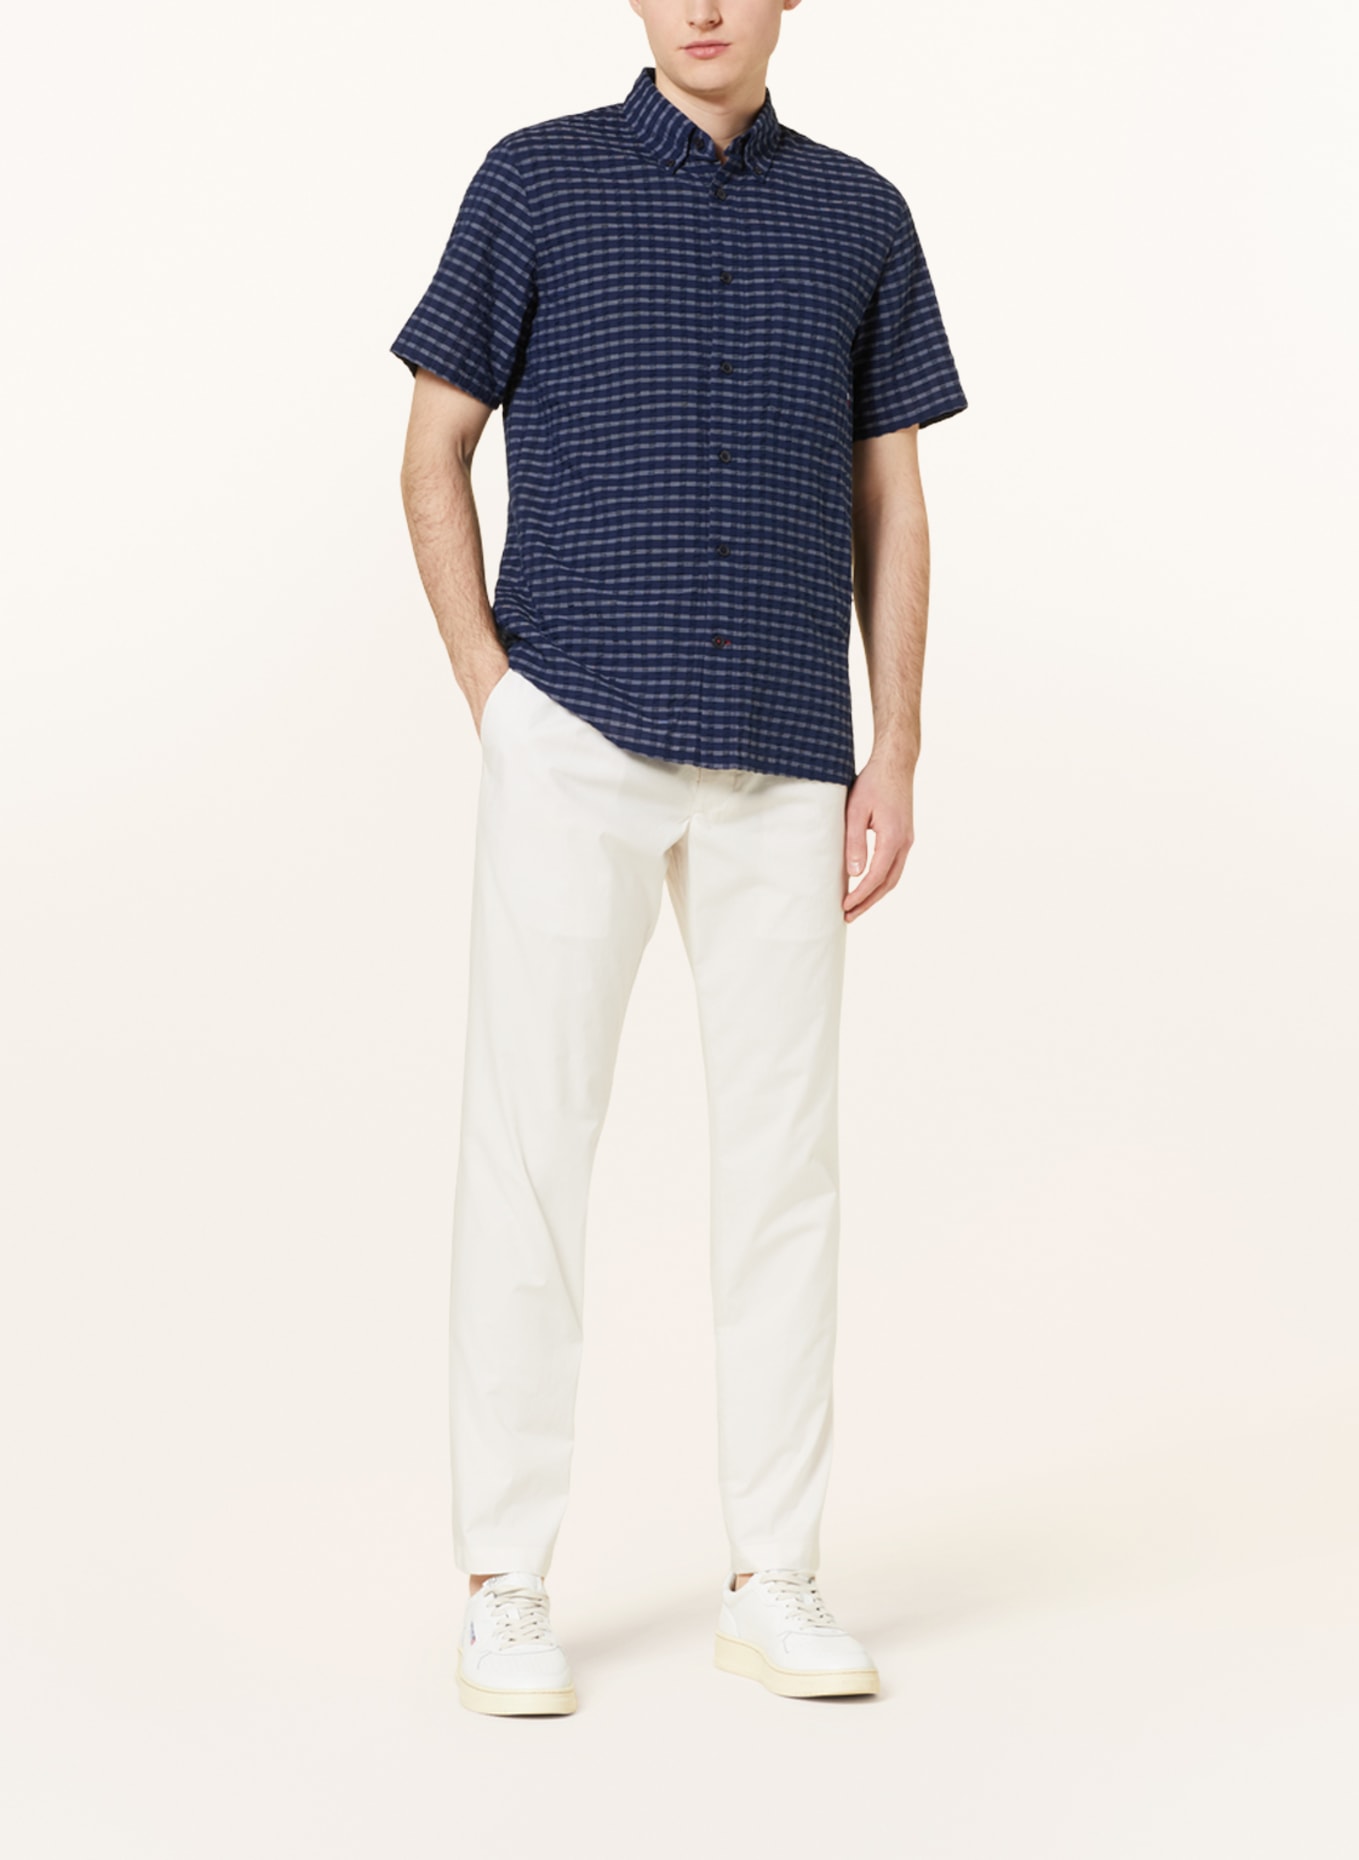 TOMMY HILFIGER Short sleeve shirt regular fit, Color: DARK BLUE/ WHITE (Image 2)